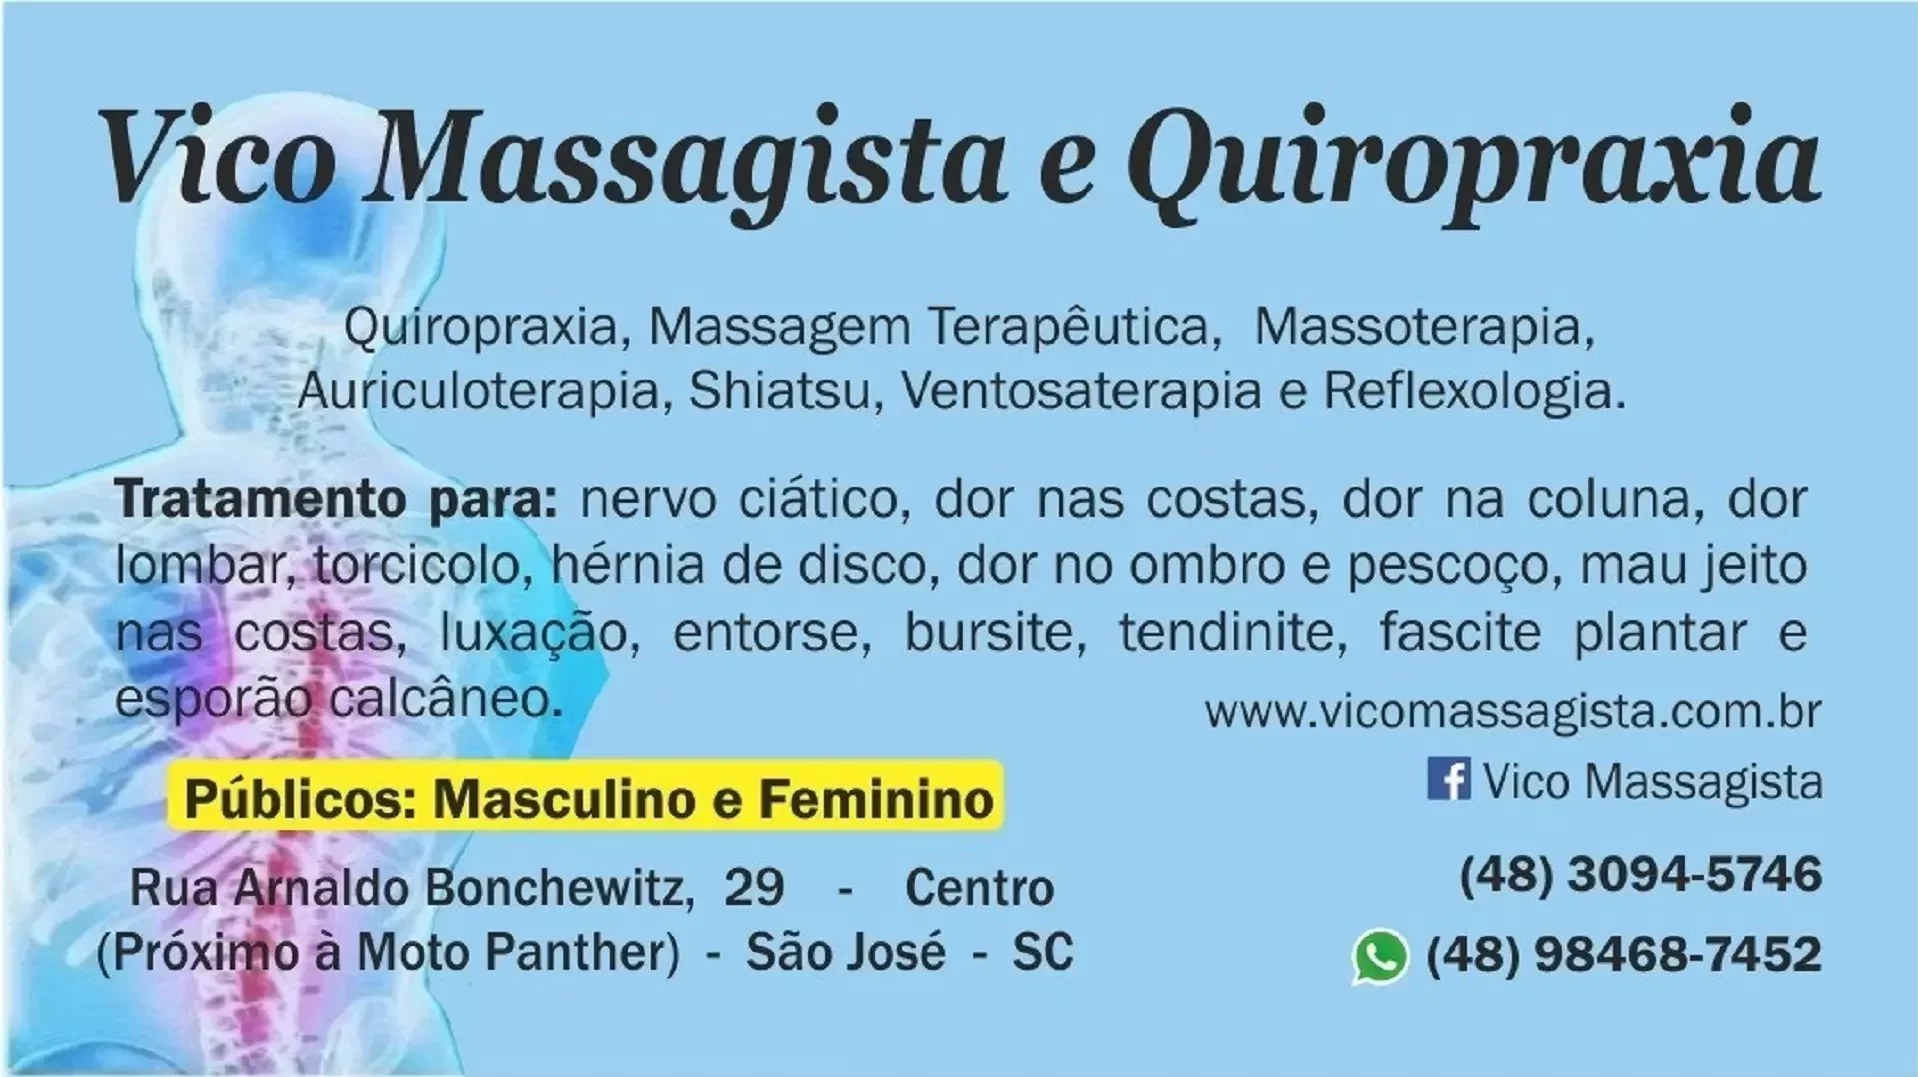 Vico Massagista e Quiropraxia atende em São José SC. Massagens e terapias: Quiropraxia, massagem terapêutica, massoterapia e ventosaterapia